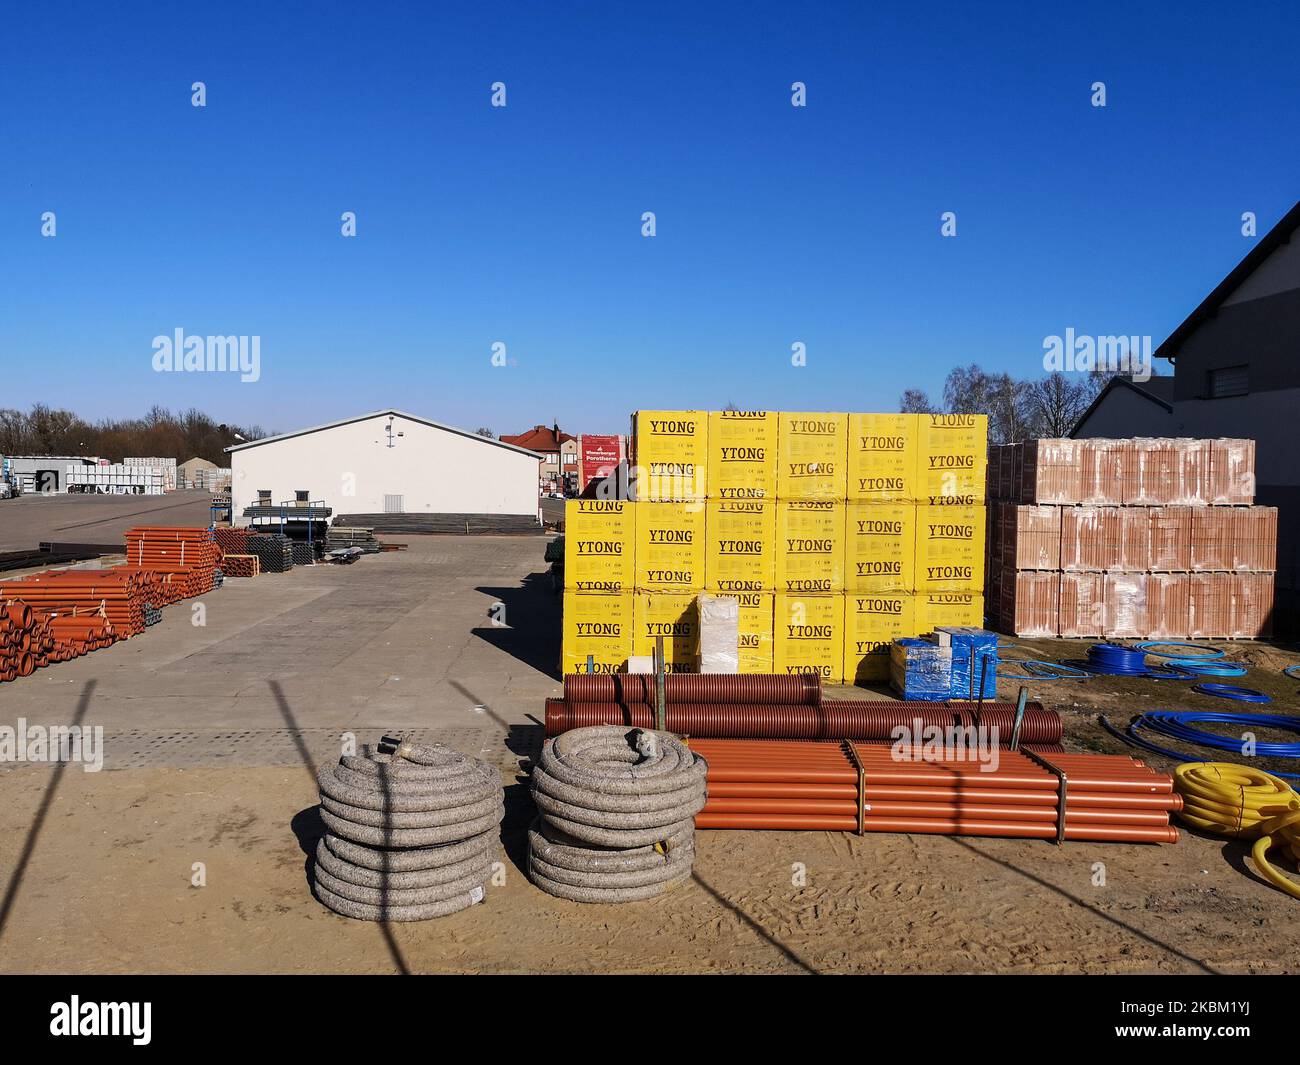 Des blocs de béton cellulaire Ytong, des tuyaux d'égout et d'autres matériaux de construction dans un dépôt de construction de MTD sont vus à Gdansk, en Pologne, le 5 avril 2020 (photo de Michal Fludra/NurPhoto) Banque D'Images